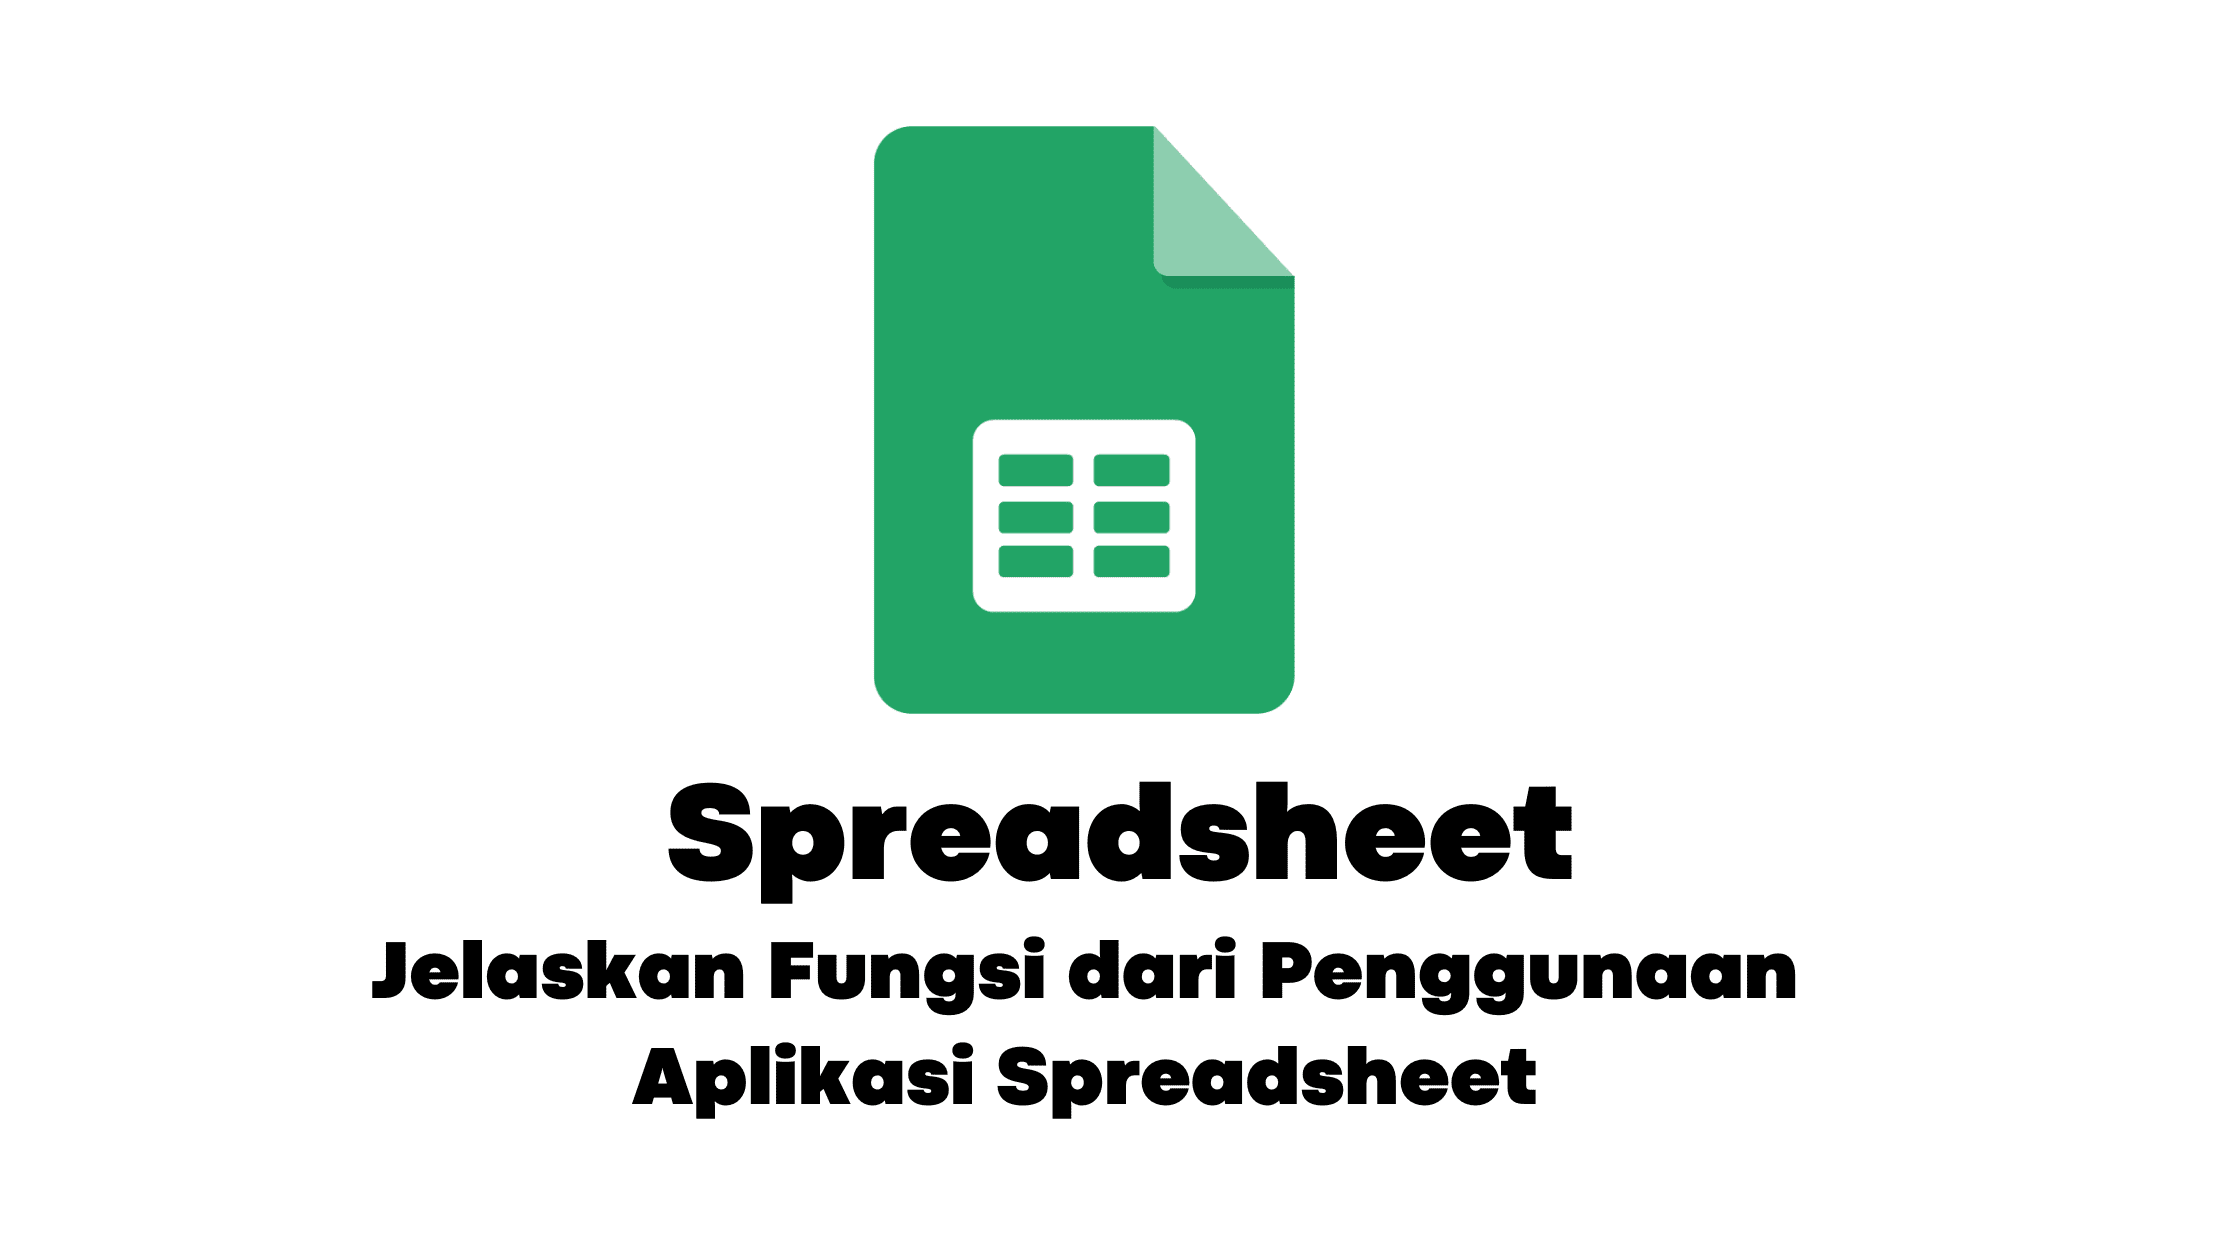 Jelaskan Fungsi dari Penggunaan Aplikasi Spreadsheet